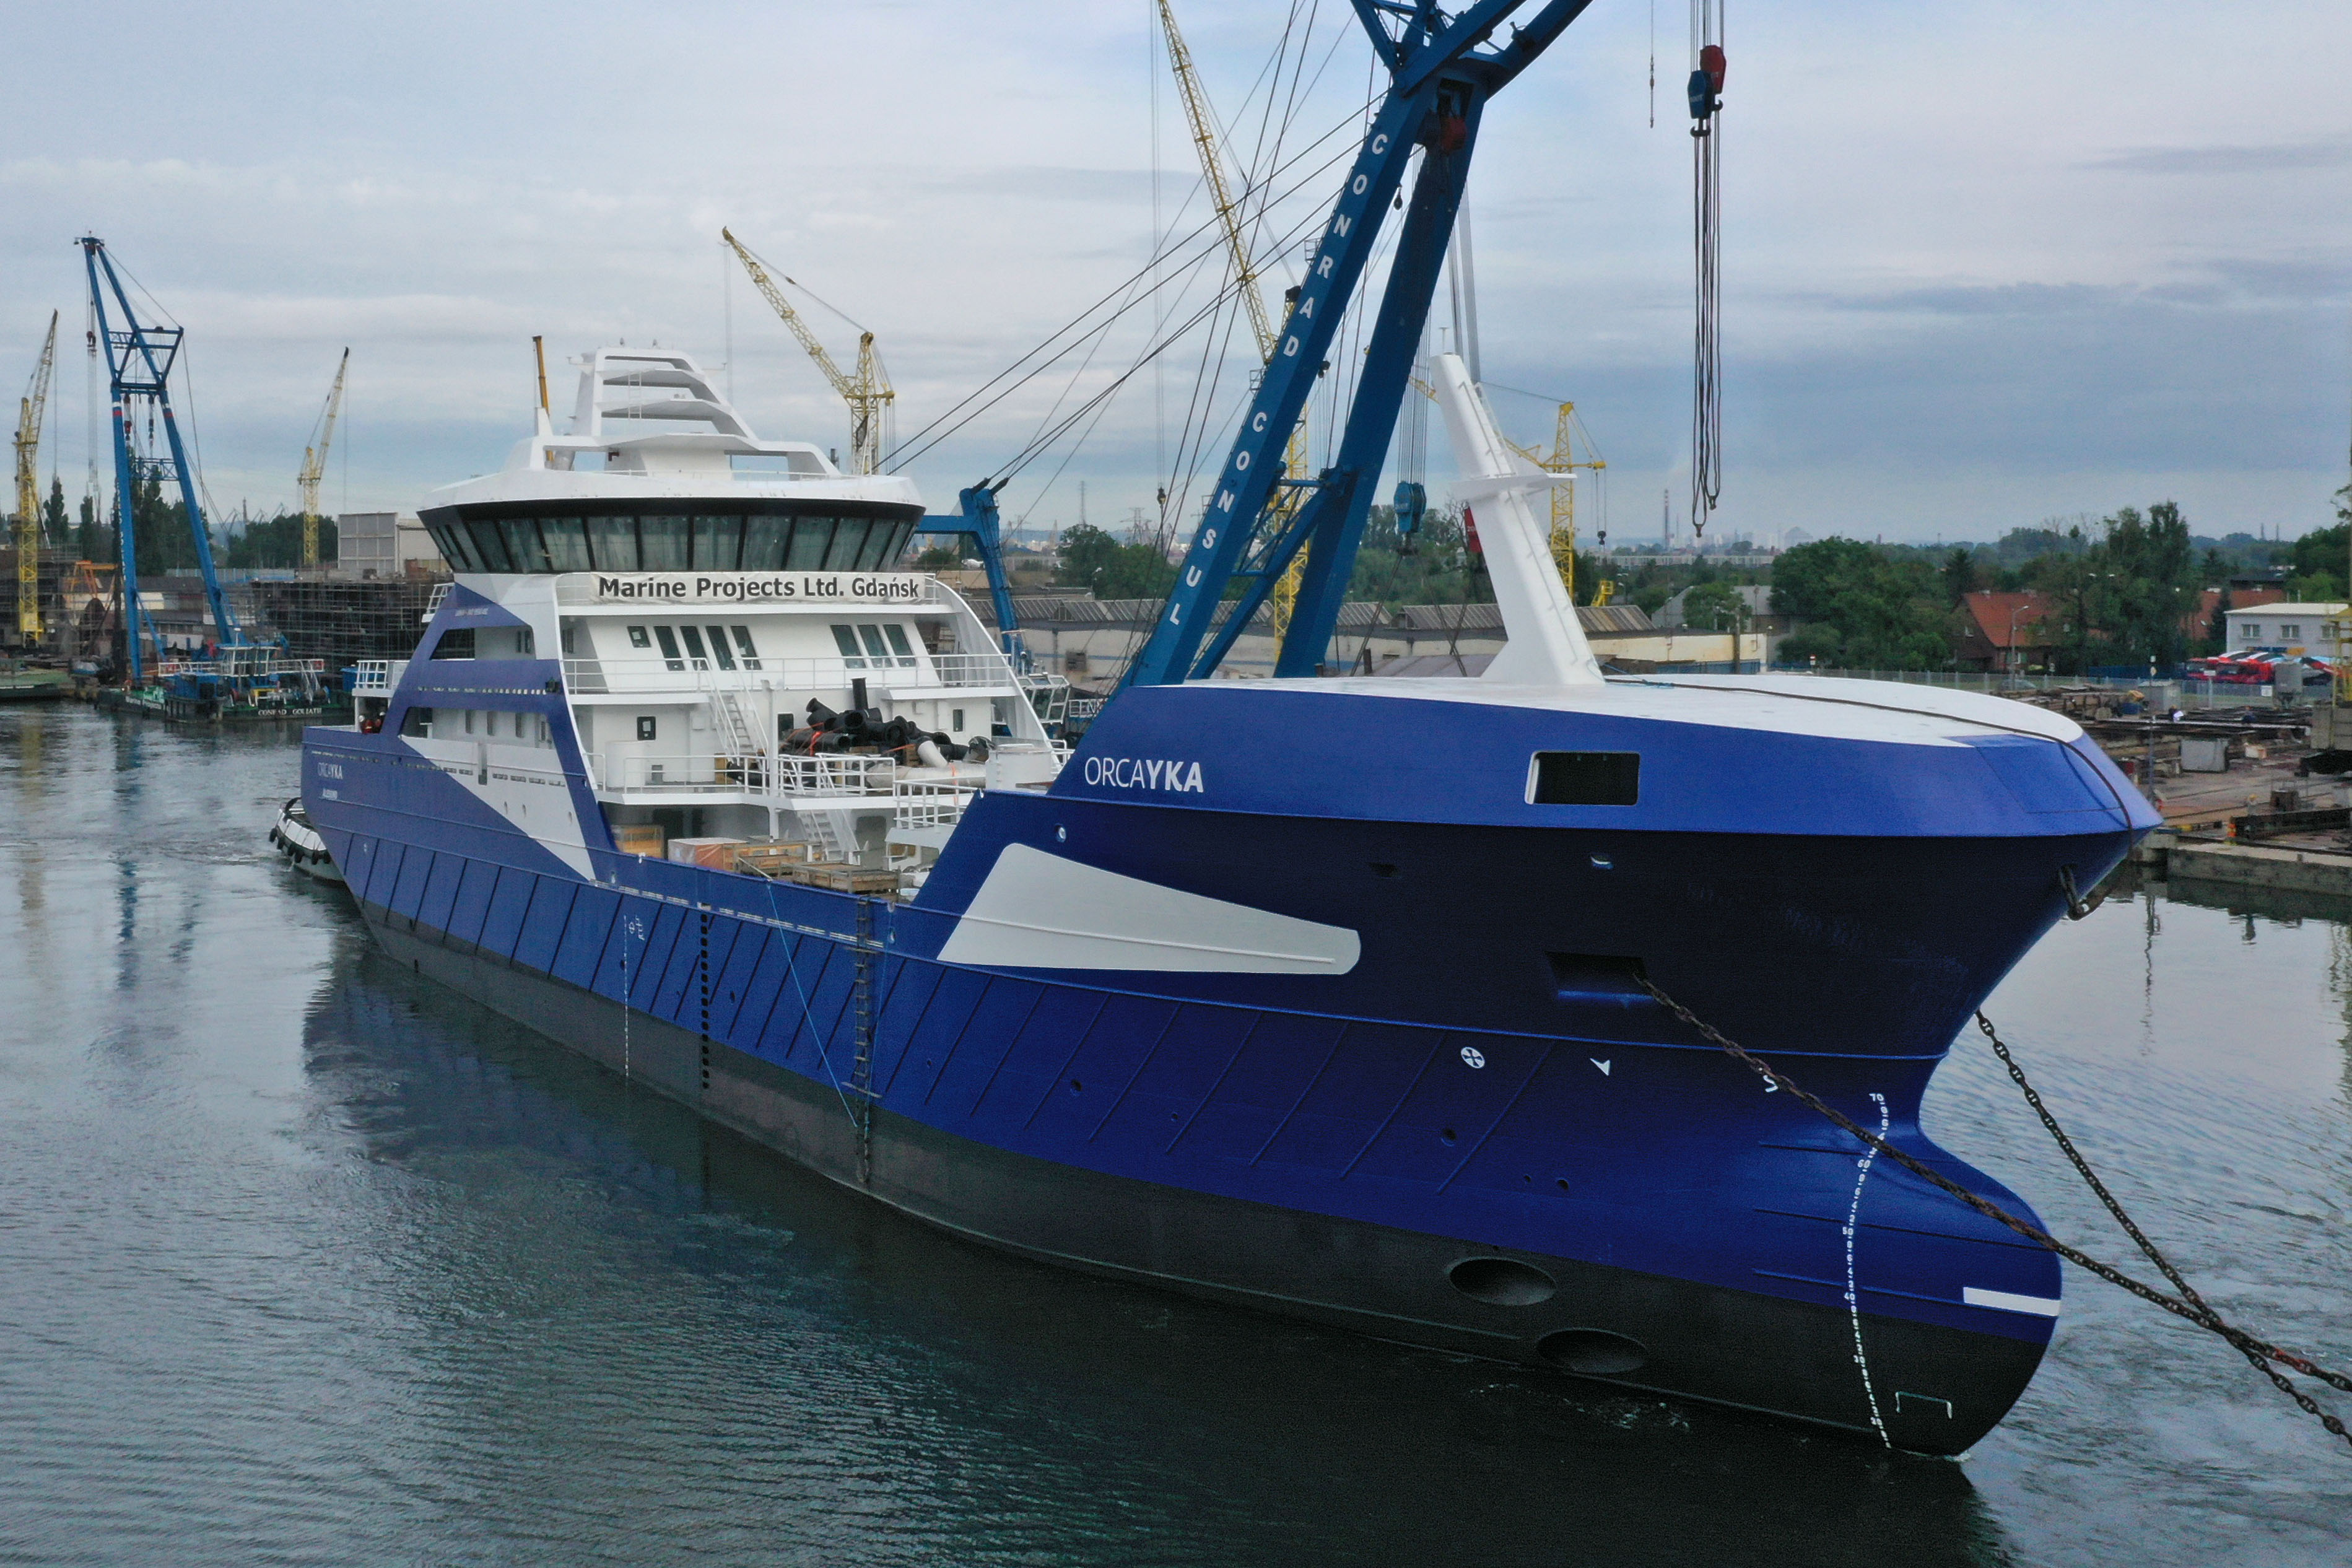 Orca Yka opuszcza stocznię Marine Projects